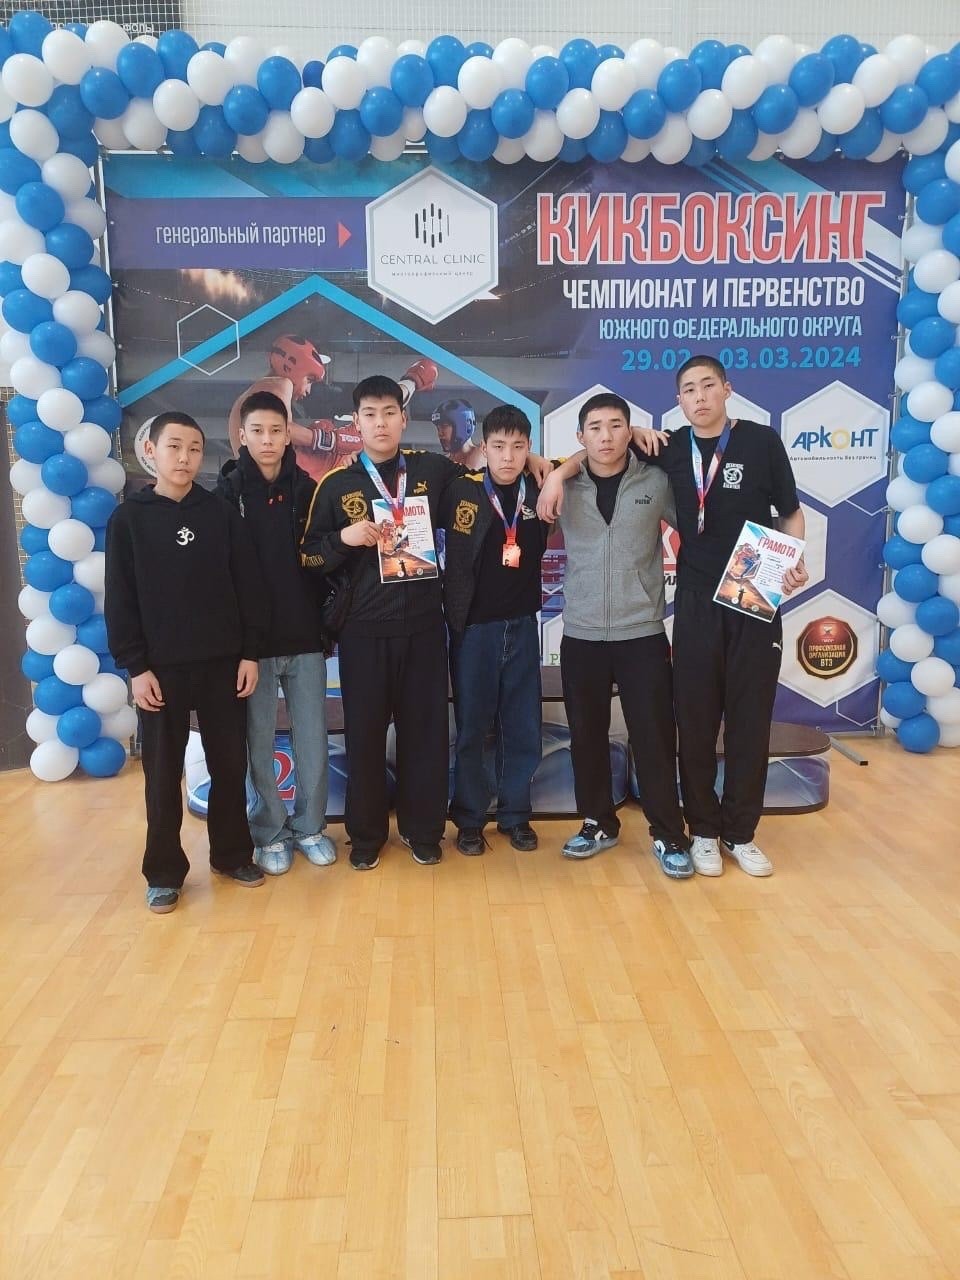 Кикбоксеры из Калмыкии завоевали награды на чемпионате и первенстве ЮФО в Волгограде